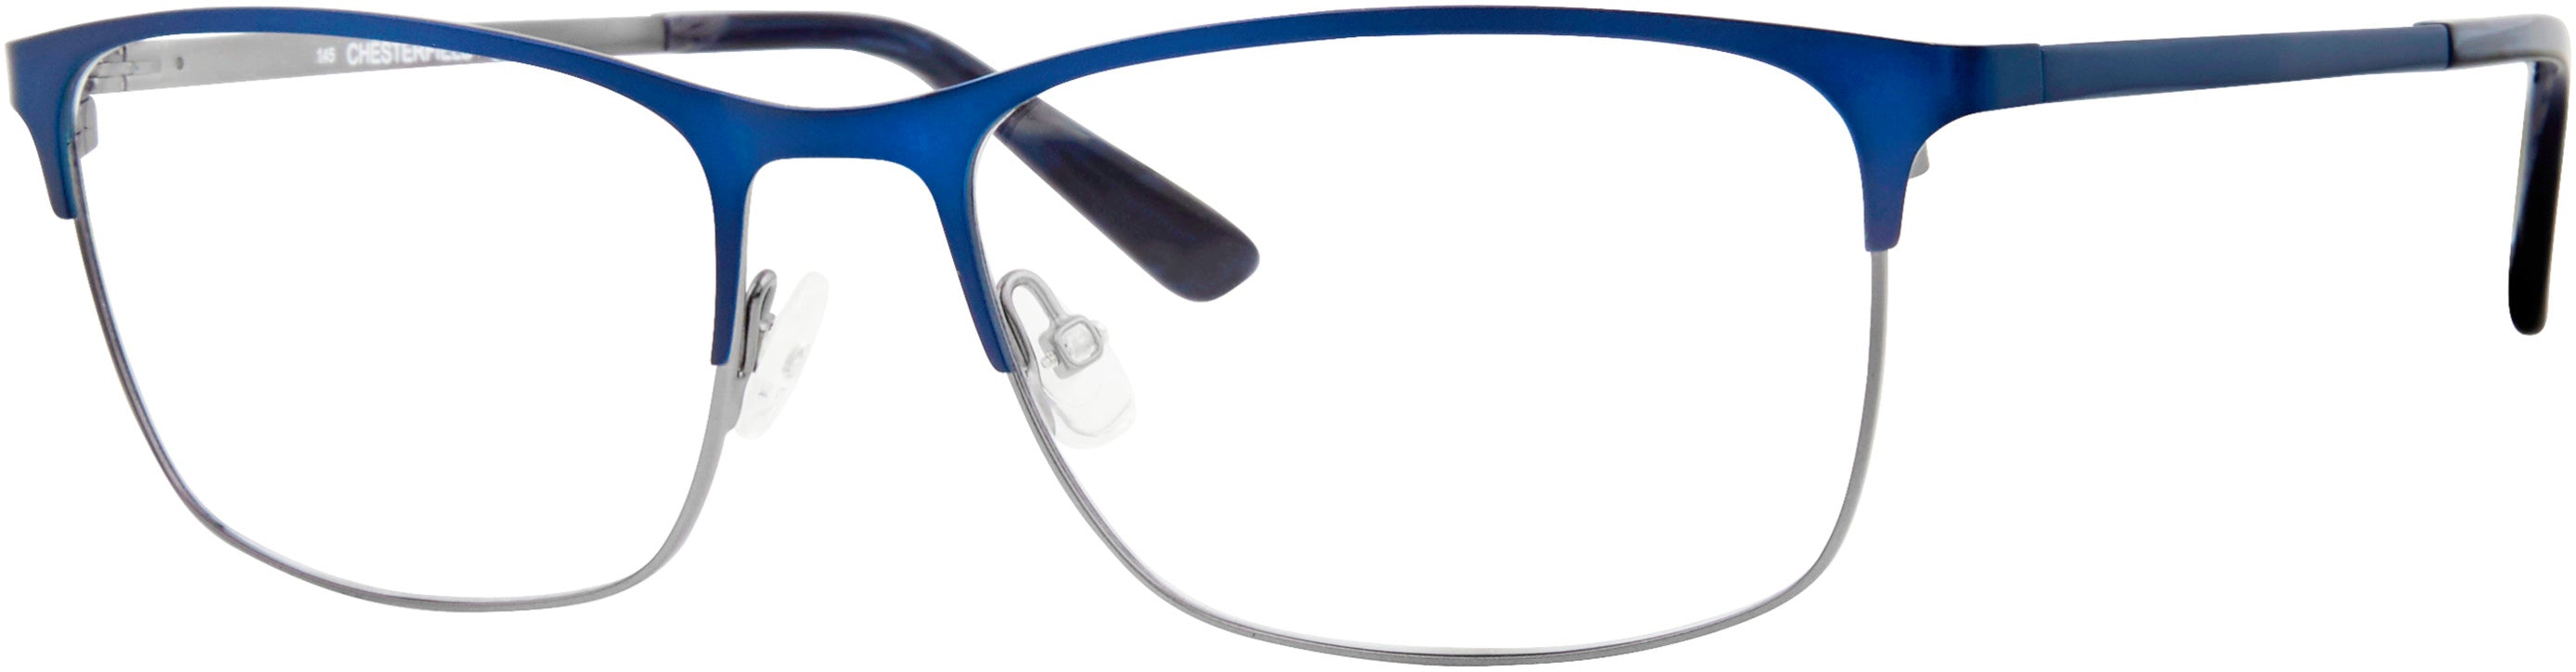  Chesterfield 63XL Rectangular Eyeglasses 0KU0-0KU0  Matte Bl Ruthenium (00 Demo Lens)